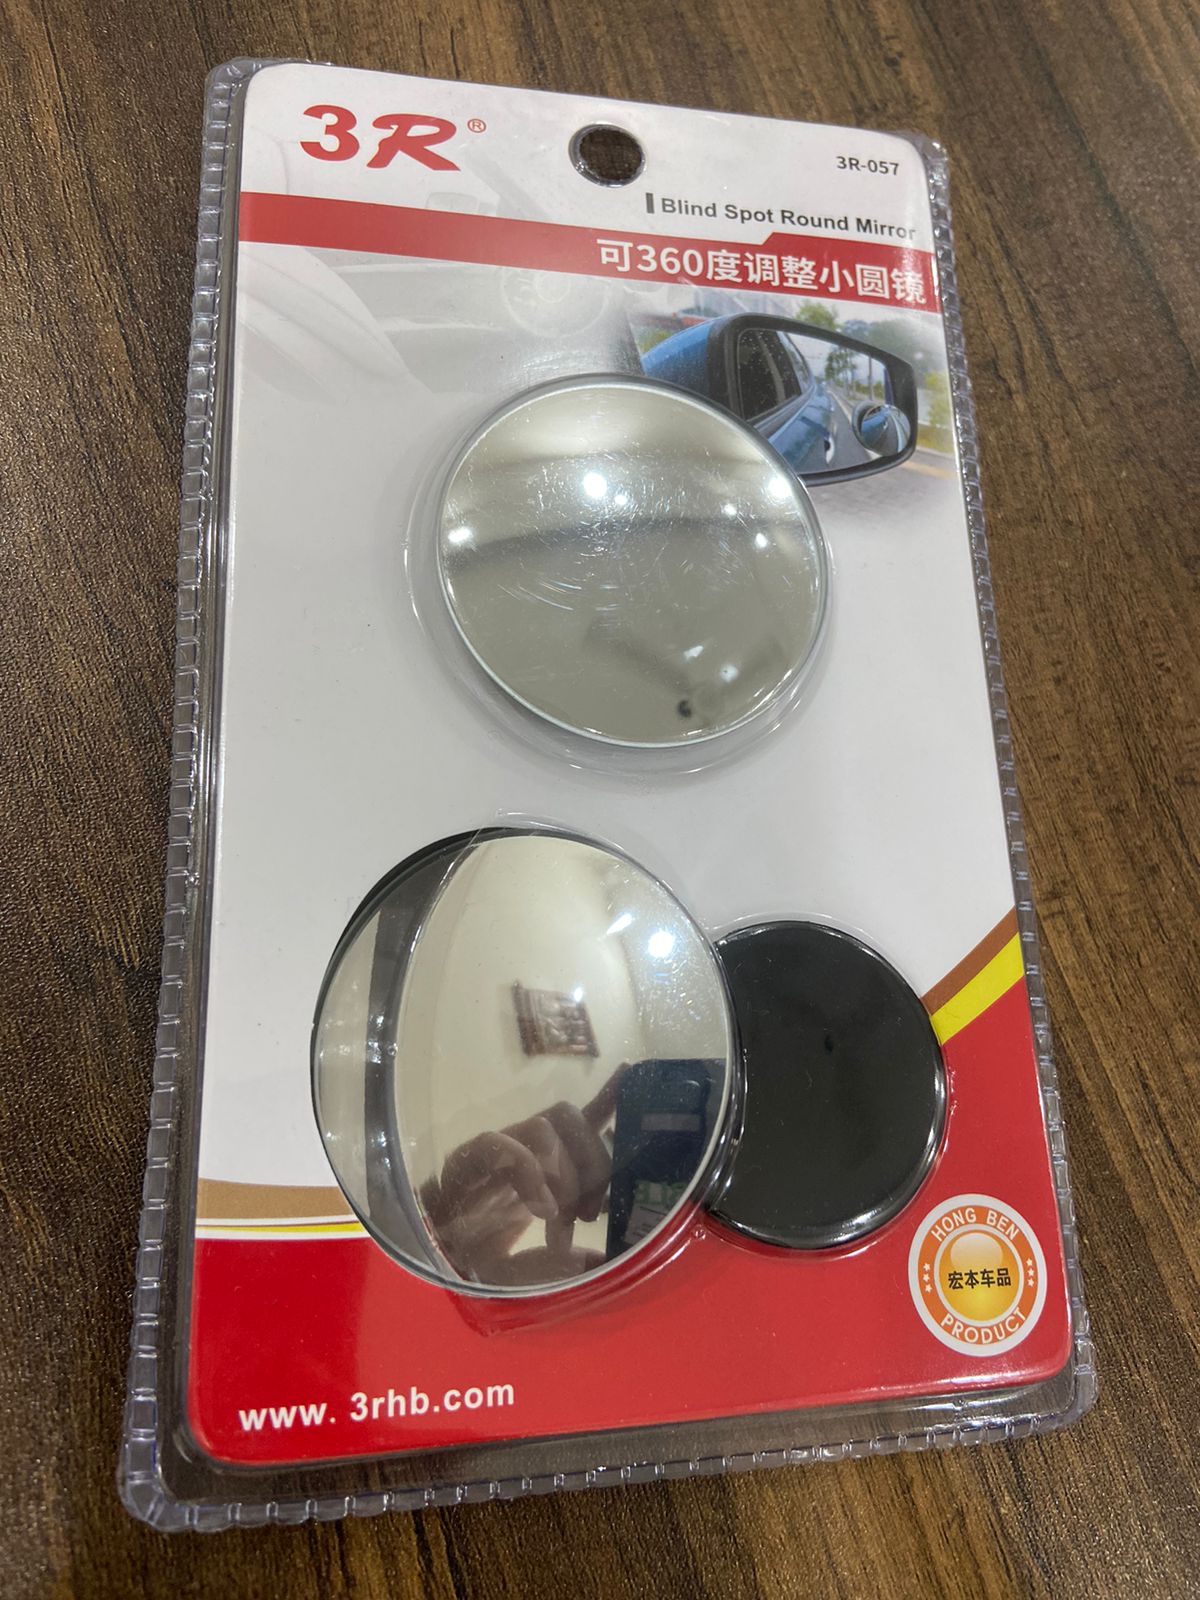 KEWAYO 151-3 in 1 Car Rear View Auxiliary Blind Spot Mirror, Rear